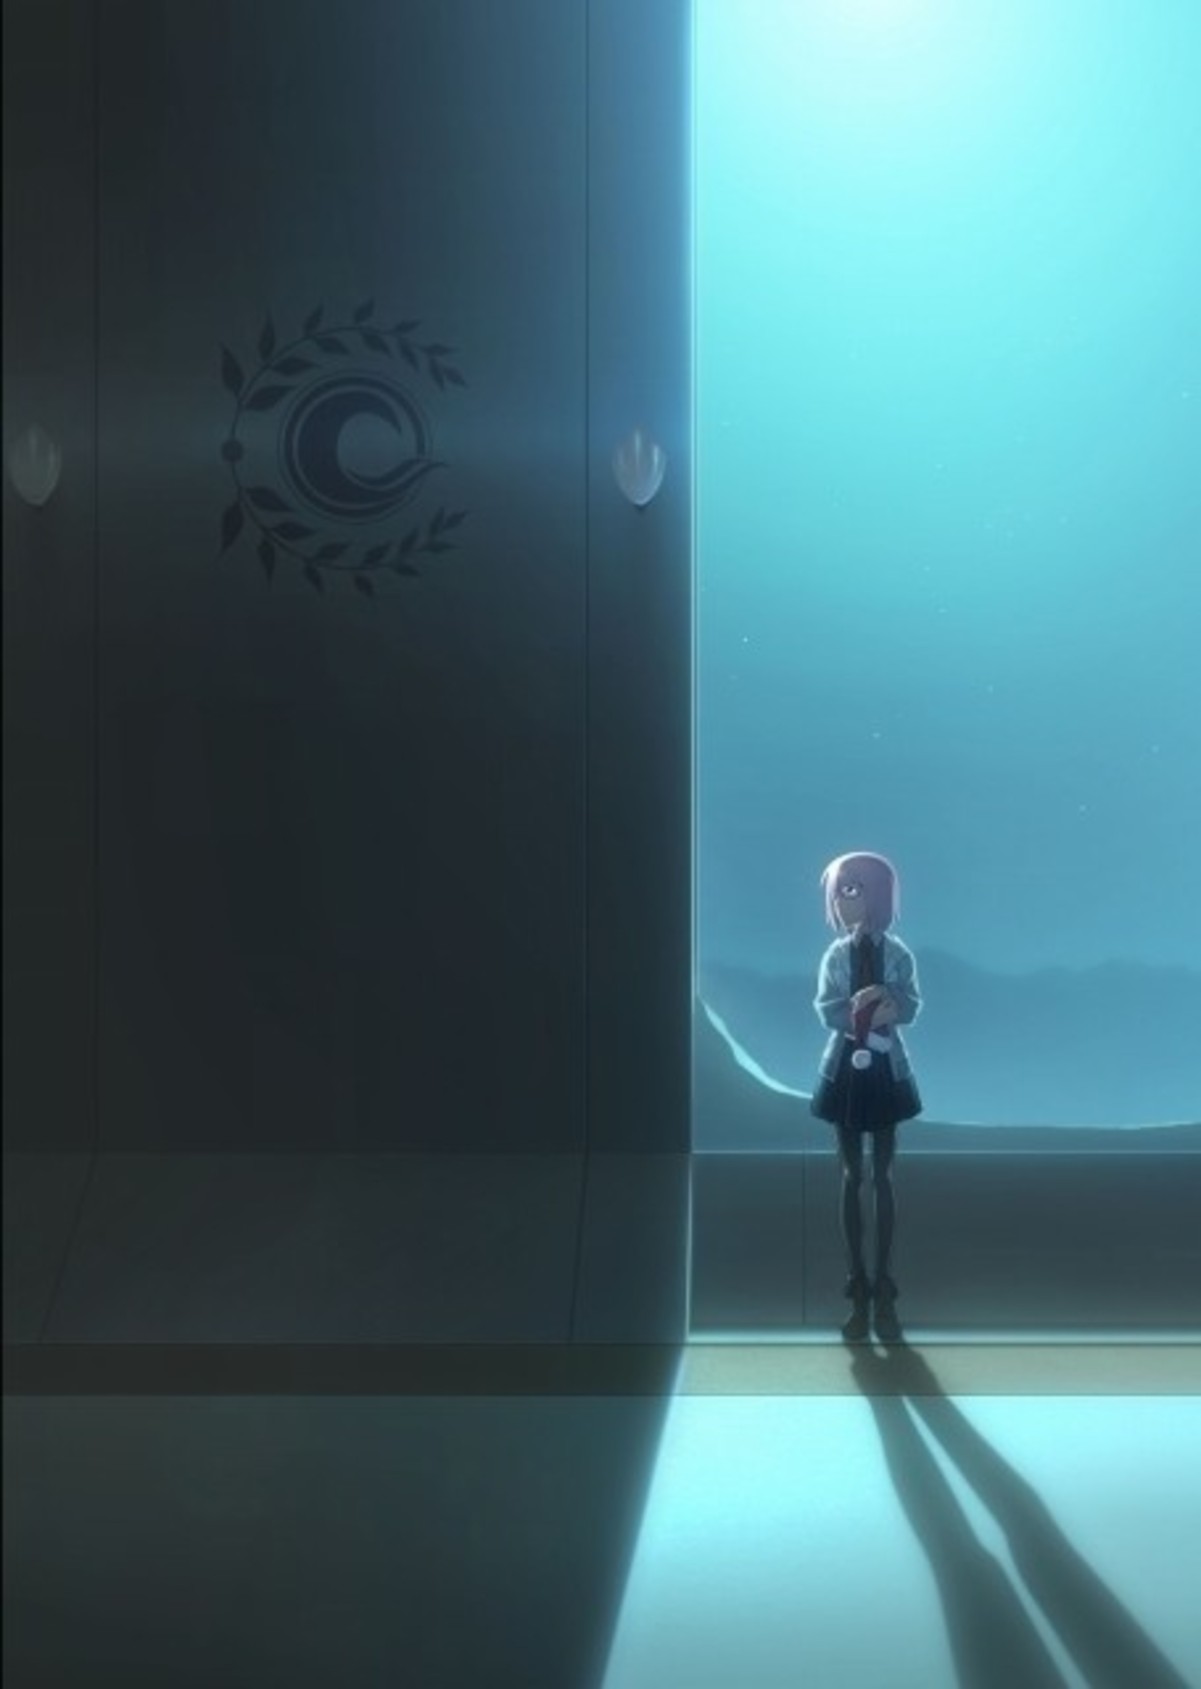 大みそかに Fate 特番 Fgo 新作アニメと 氷室の天地 Fgo ショートアニメを公開 映画ニュース 映画 Com